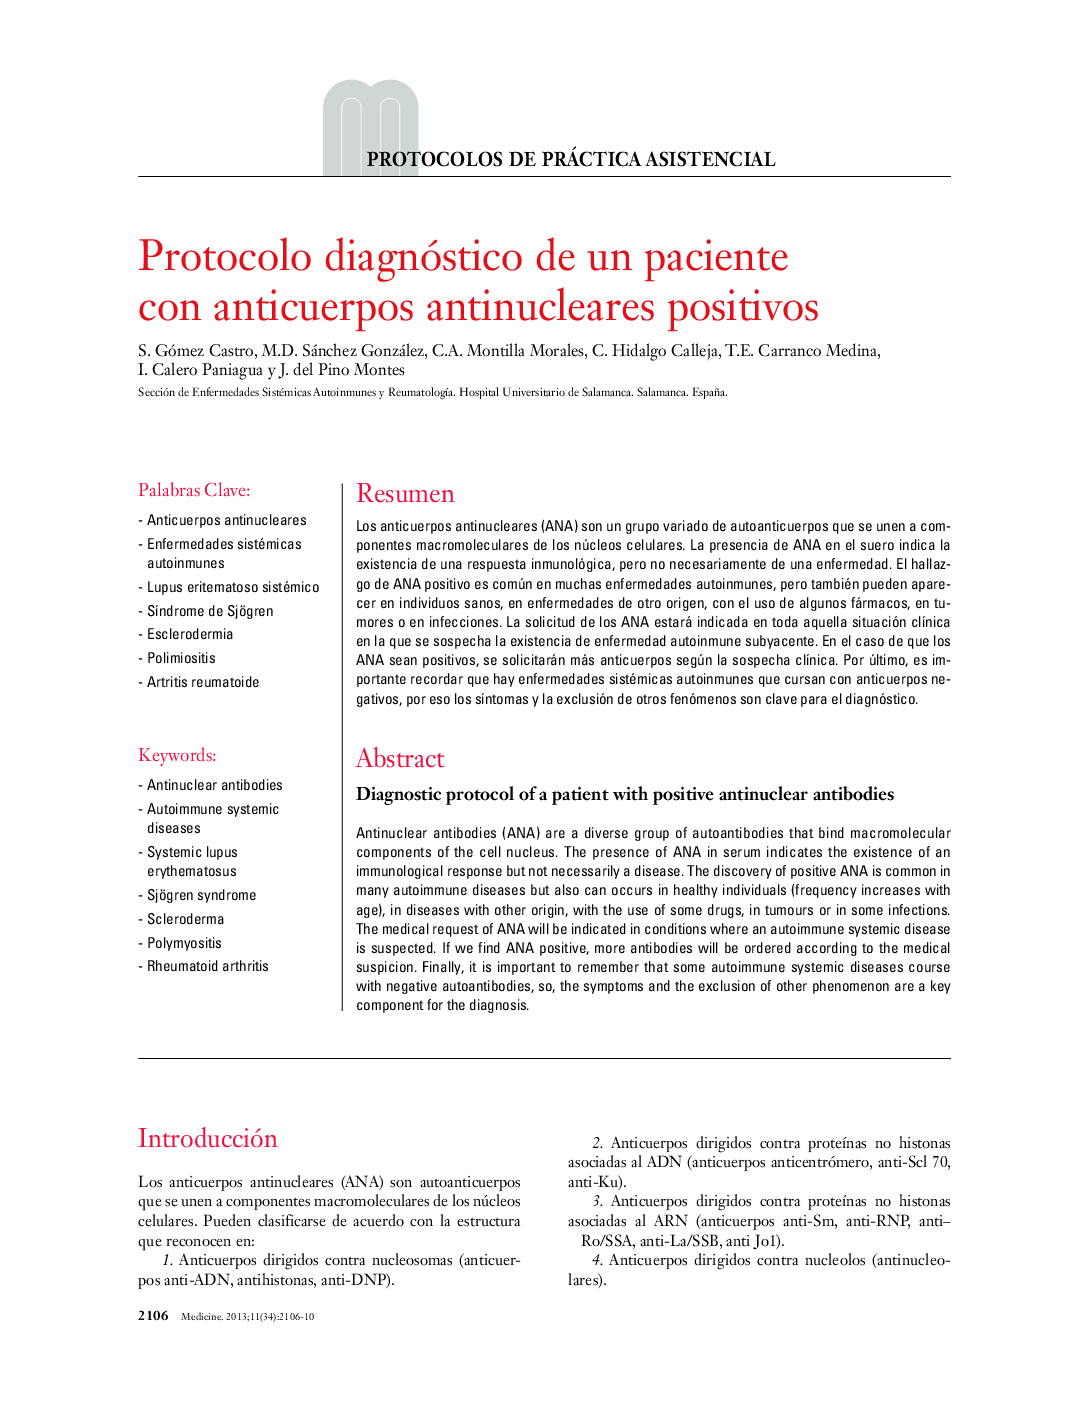 Protocolo diagnóstico de un paciente con anticuerpos antinucleares positivos